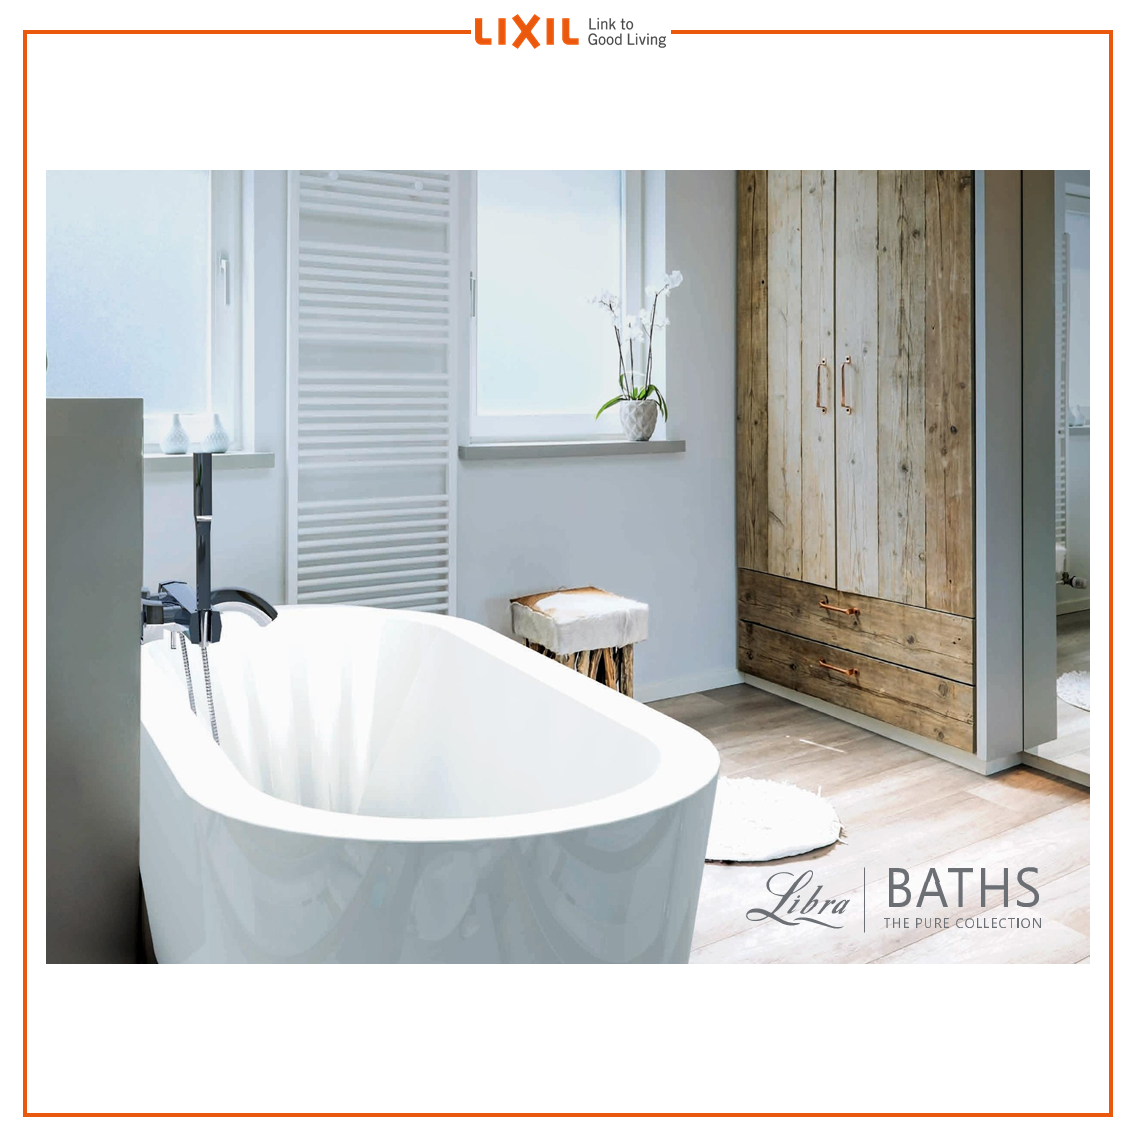 LIXIL - Libra-Bath Collection Catalogue